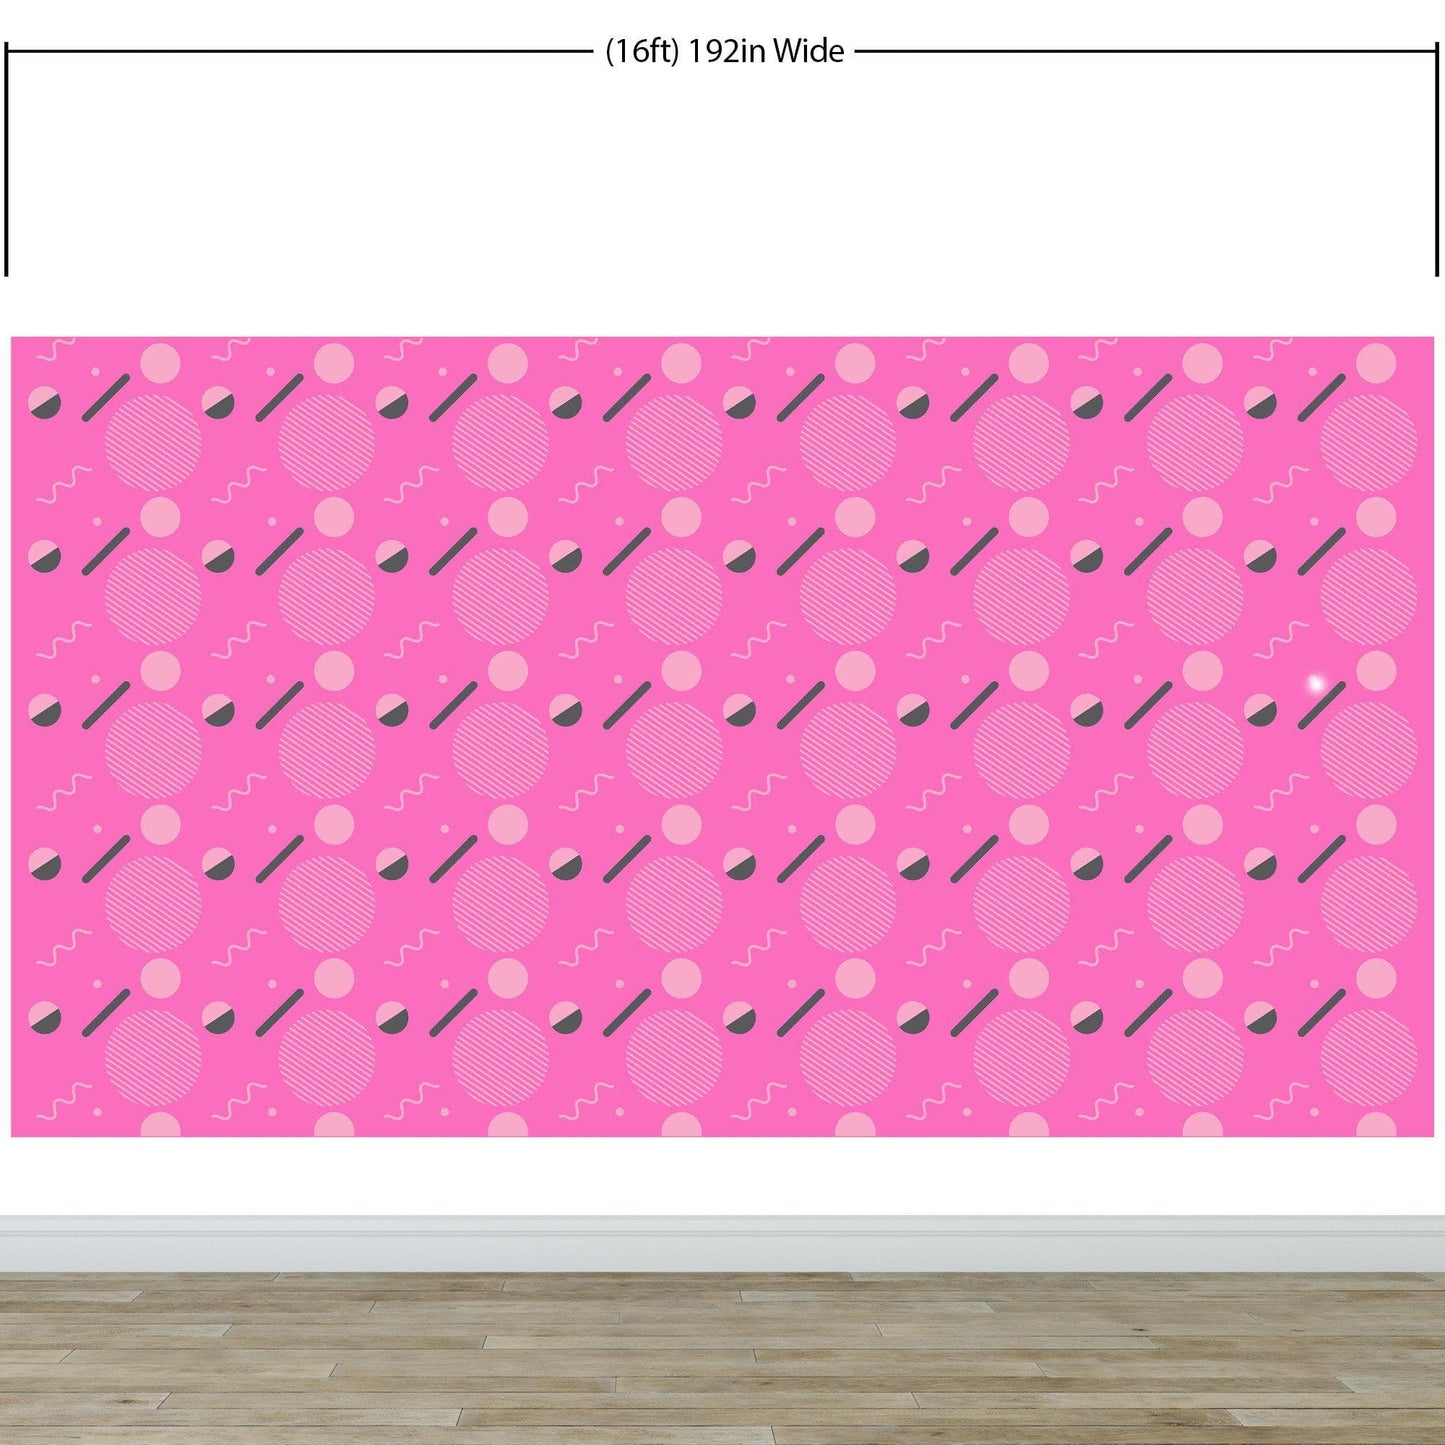 80's Wallpaper Neon Pink. 90’s Vintage Pink Memphis Wallpaper. I Love 80s. #6539